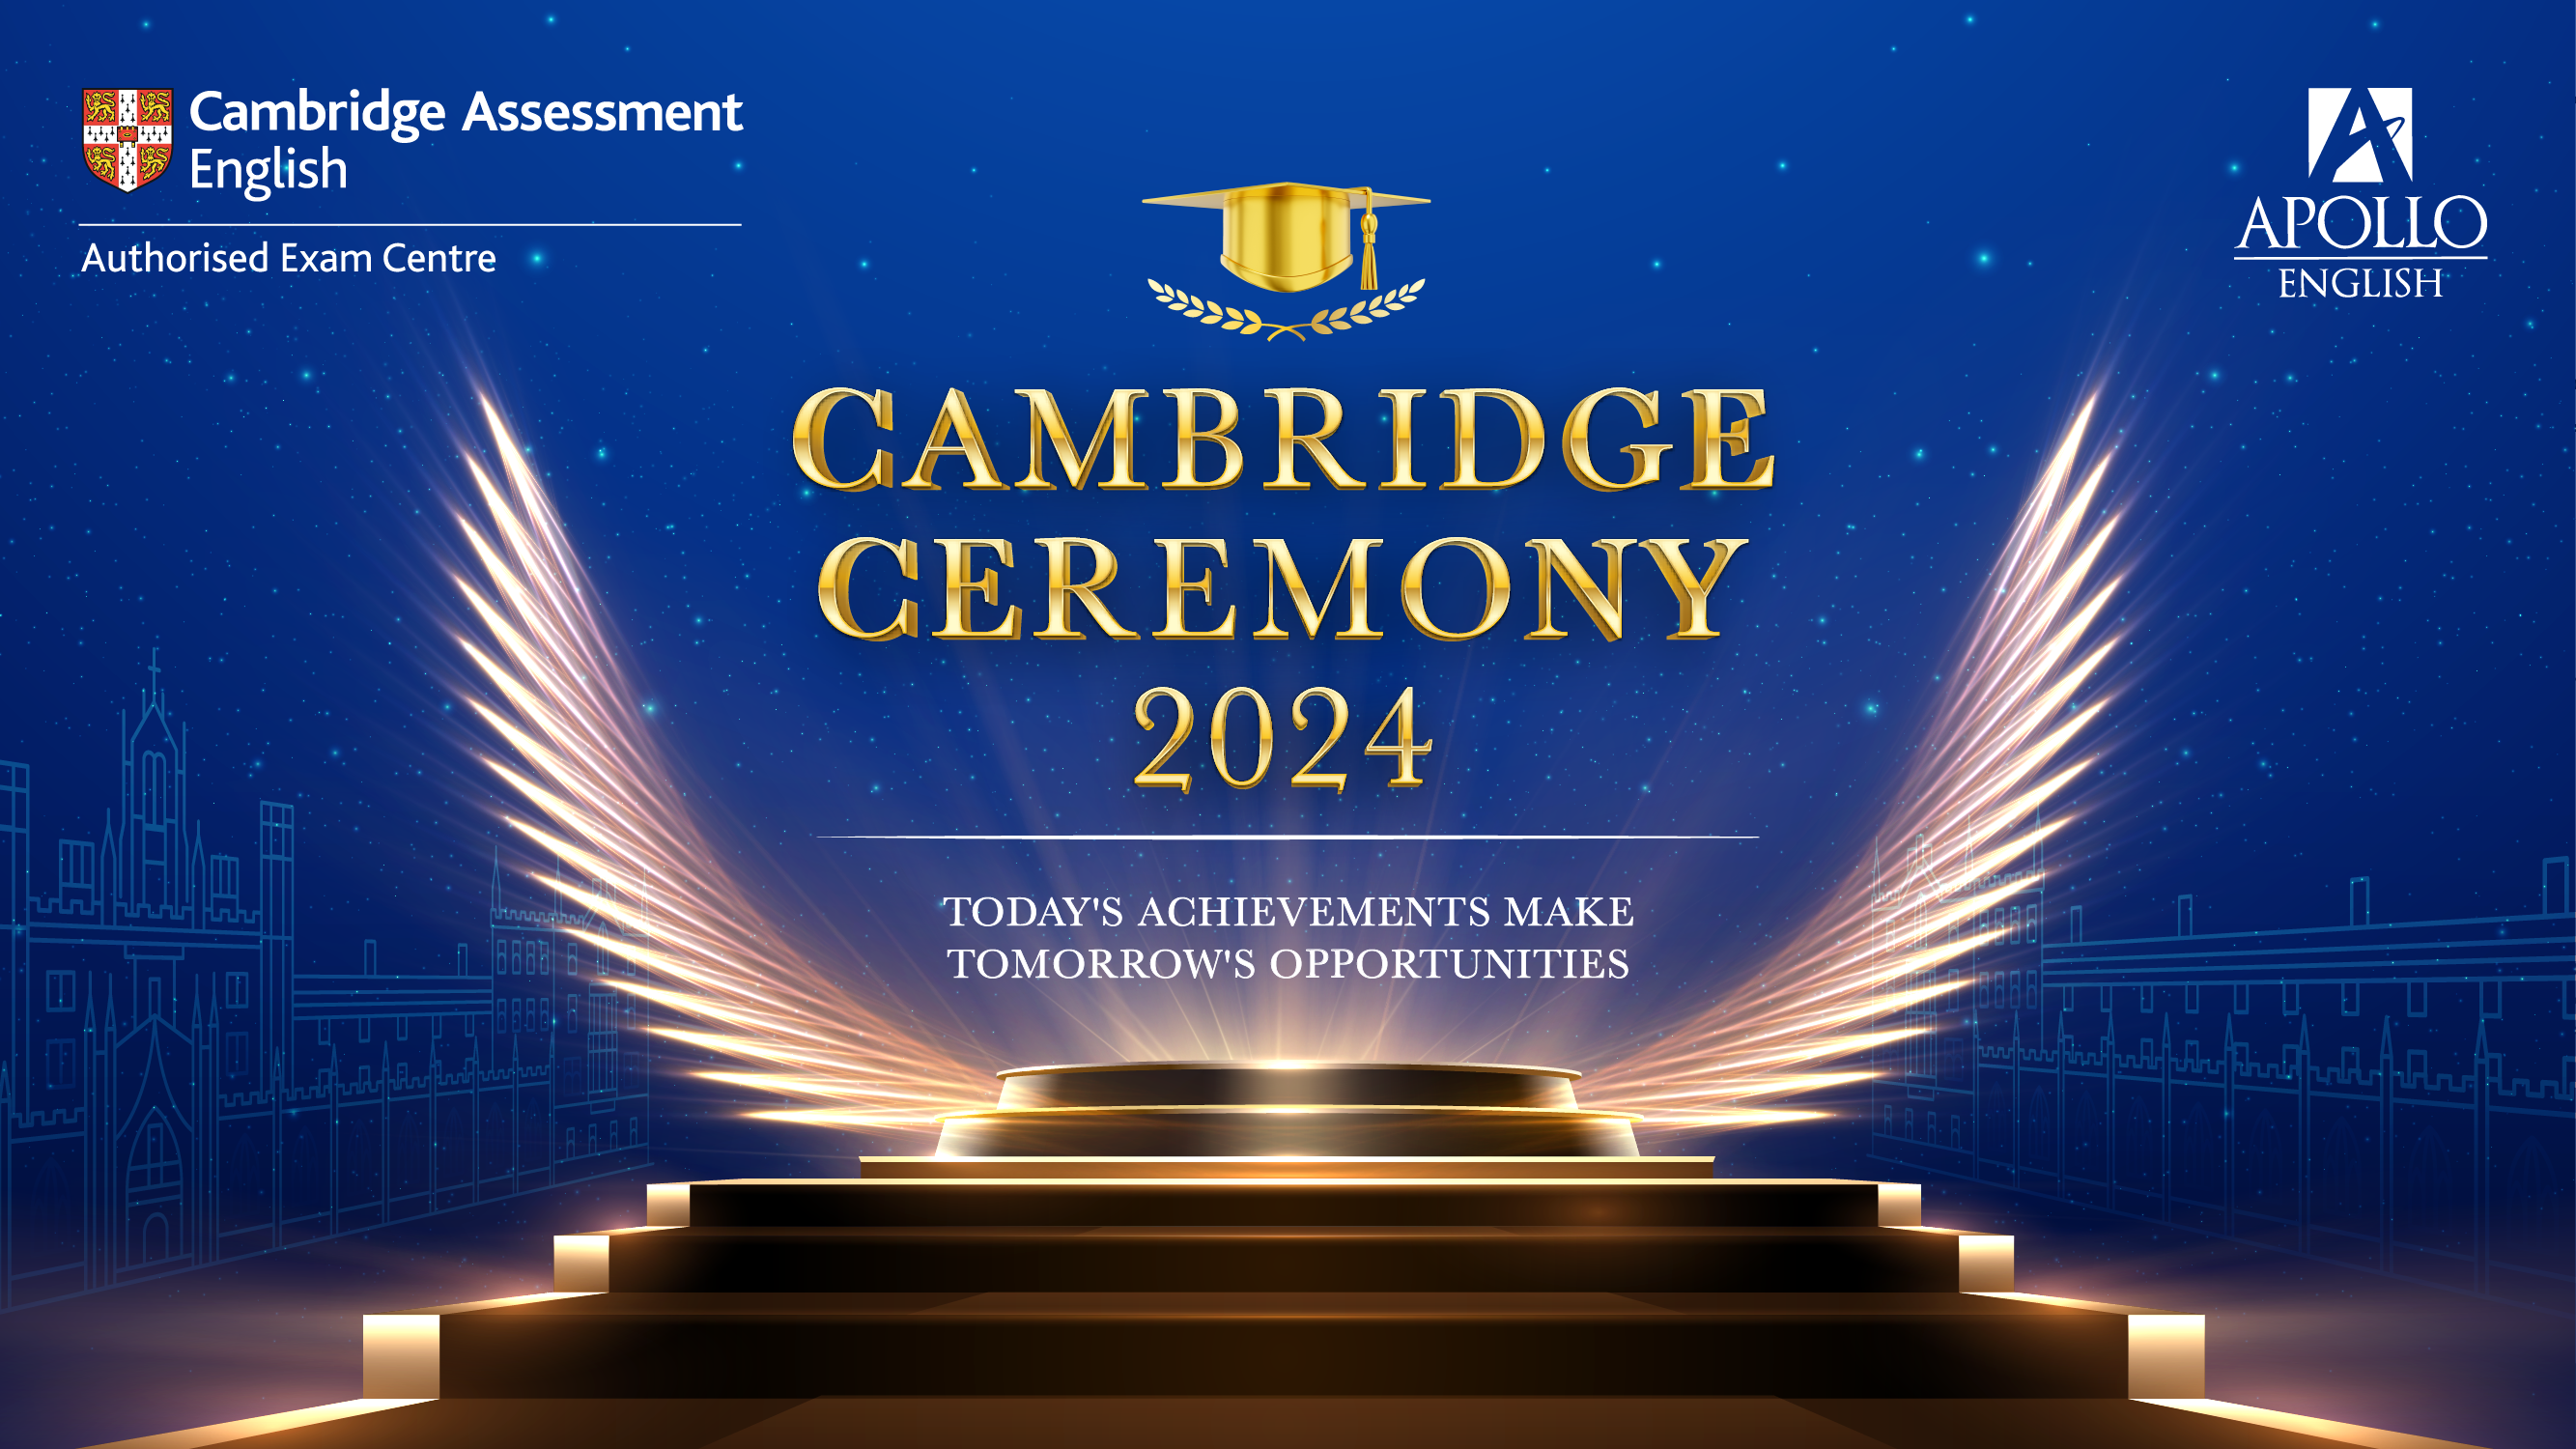 LỄ TRAO CHỨNG CHỈ CAMBRIDGE 2024 - KHU VỰC MIỀN BẮC